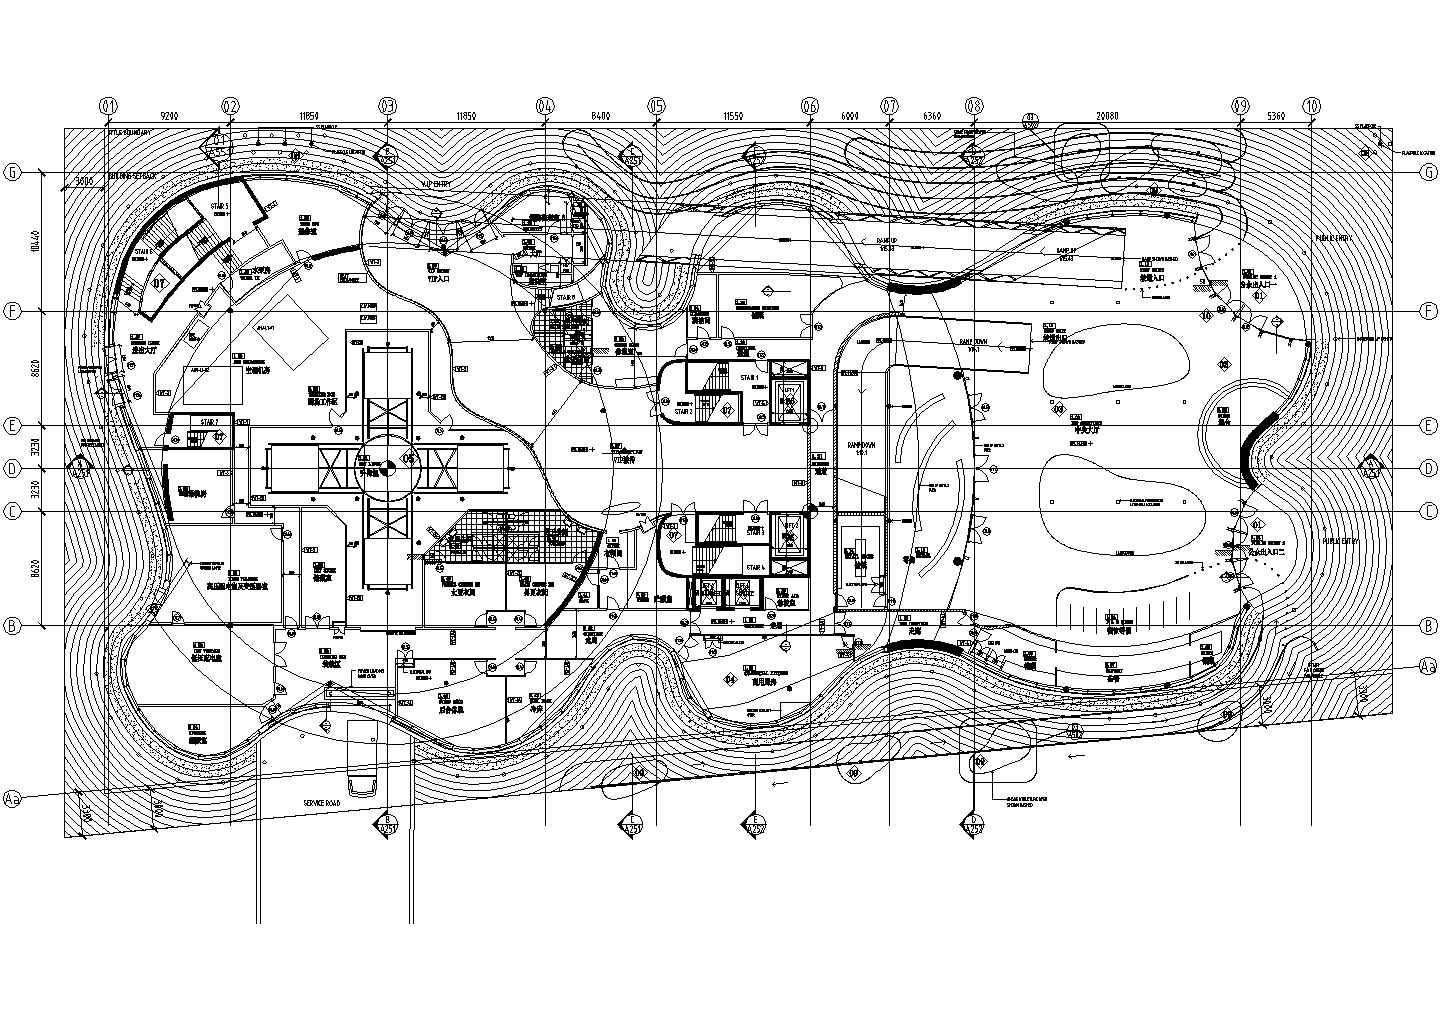 8197平米展览建筑展馆工程项目设计图纸